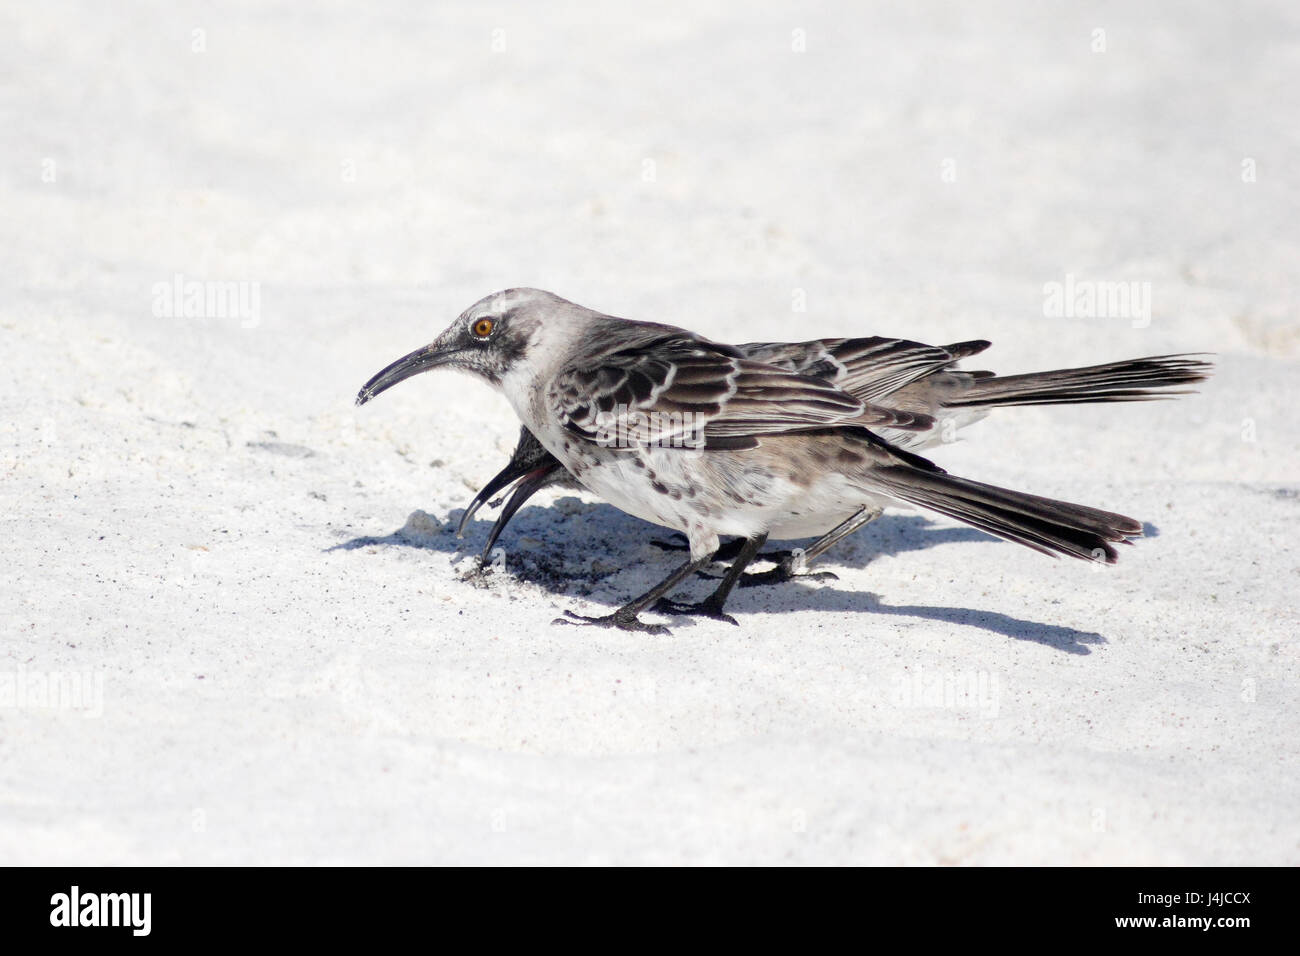 Hood mockingbird (Mimus macdonaldi) sur la plage, Gardner Bay, Espanola, Îles Galápagos Banque D'Images